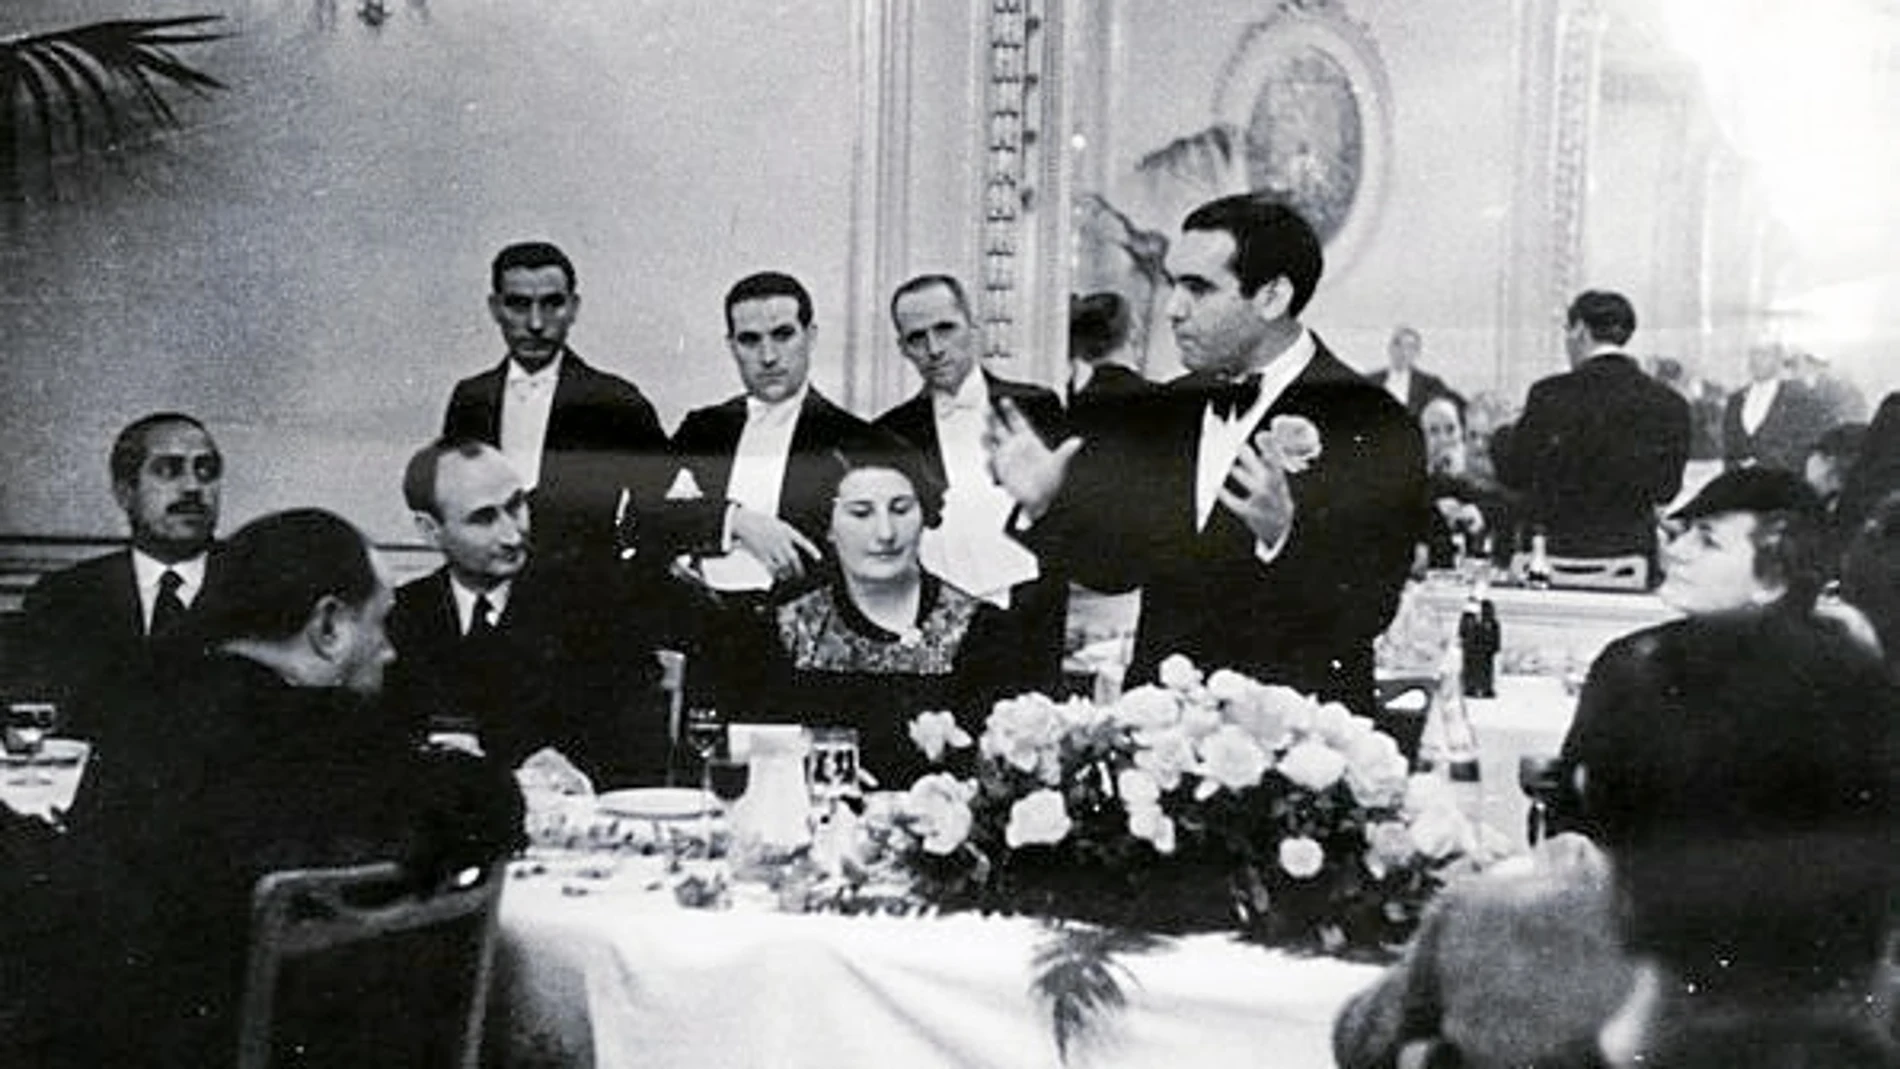 Teresa Cabarrús, aparece junto al poeta Federico García Lorca en un momento del banquete que dedicaron al poeta en el Hotel Majestic el 23 de diciembre de 1935